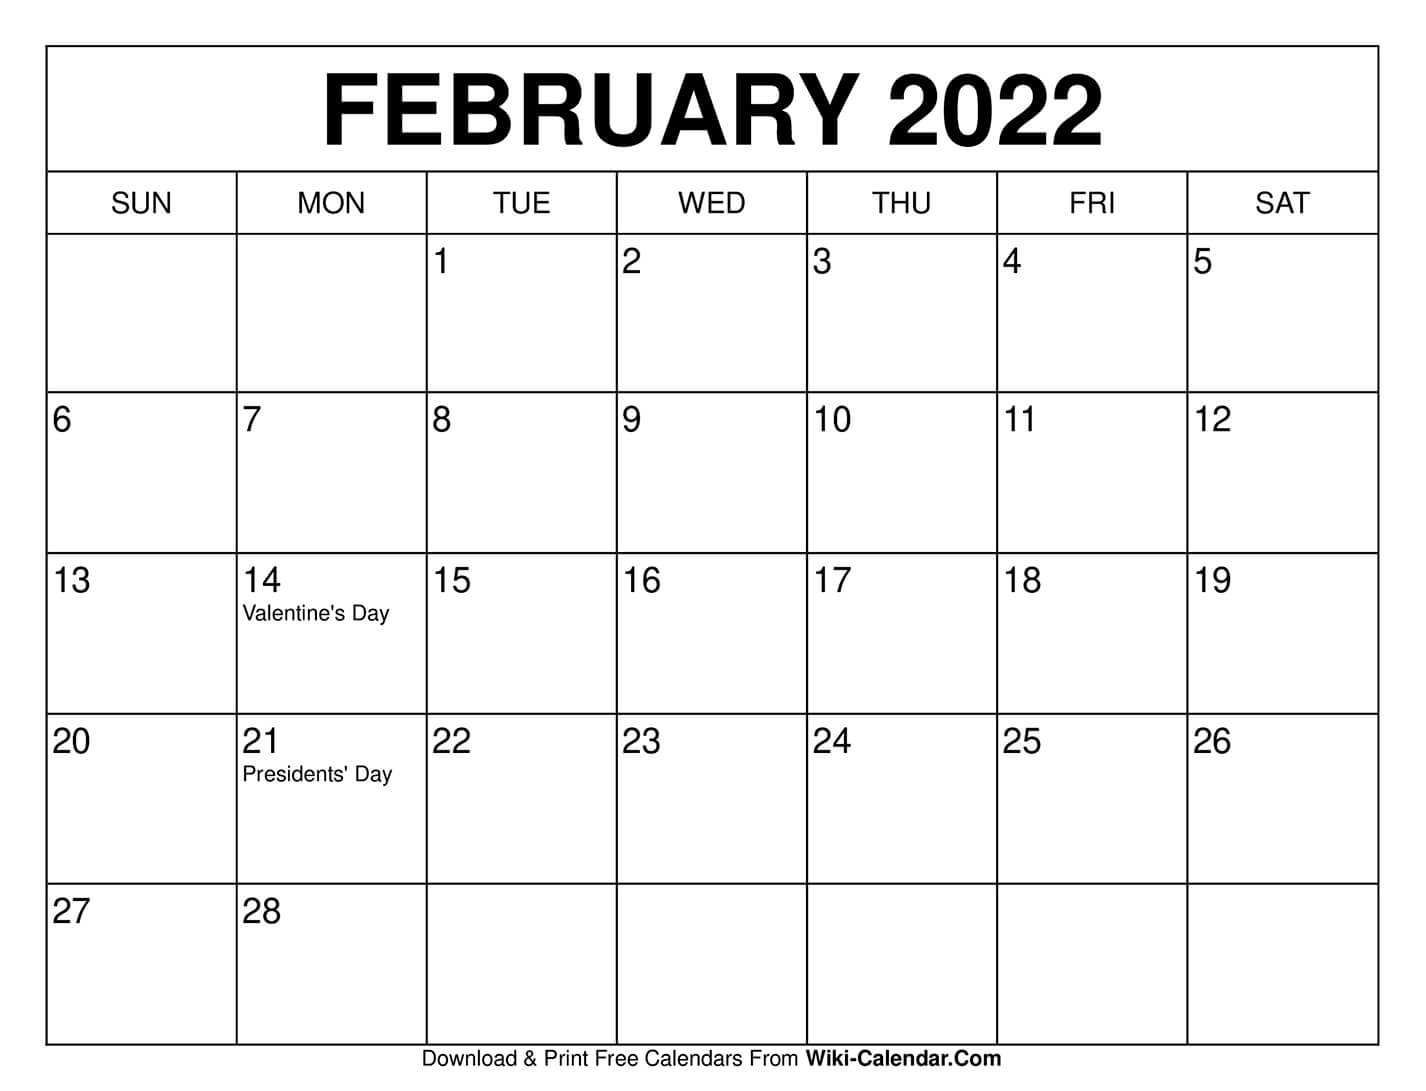 2022 Calendar Same As What Year Nexta